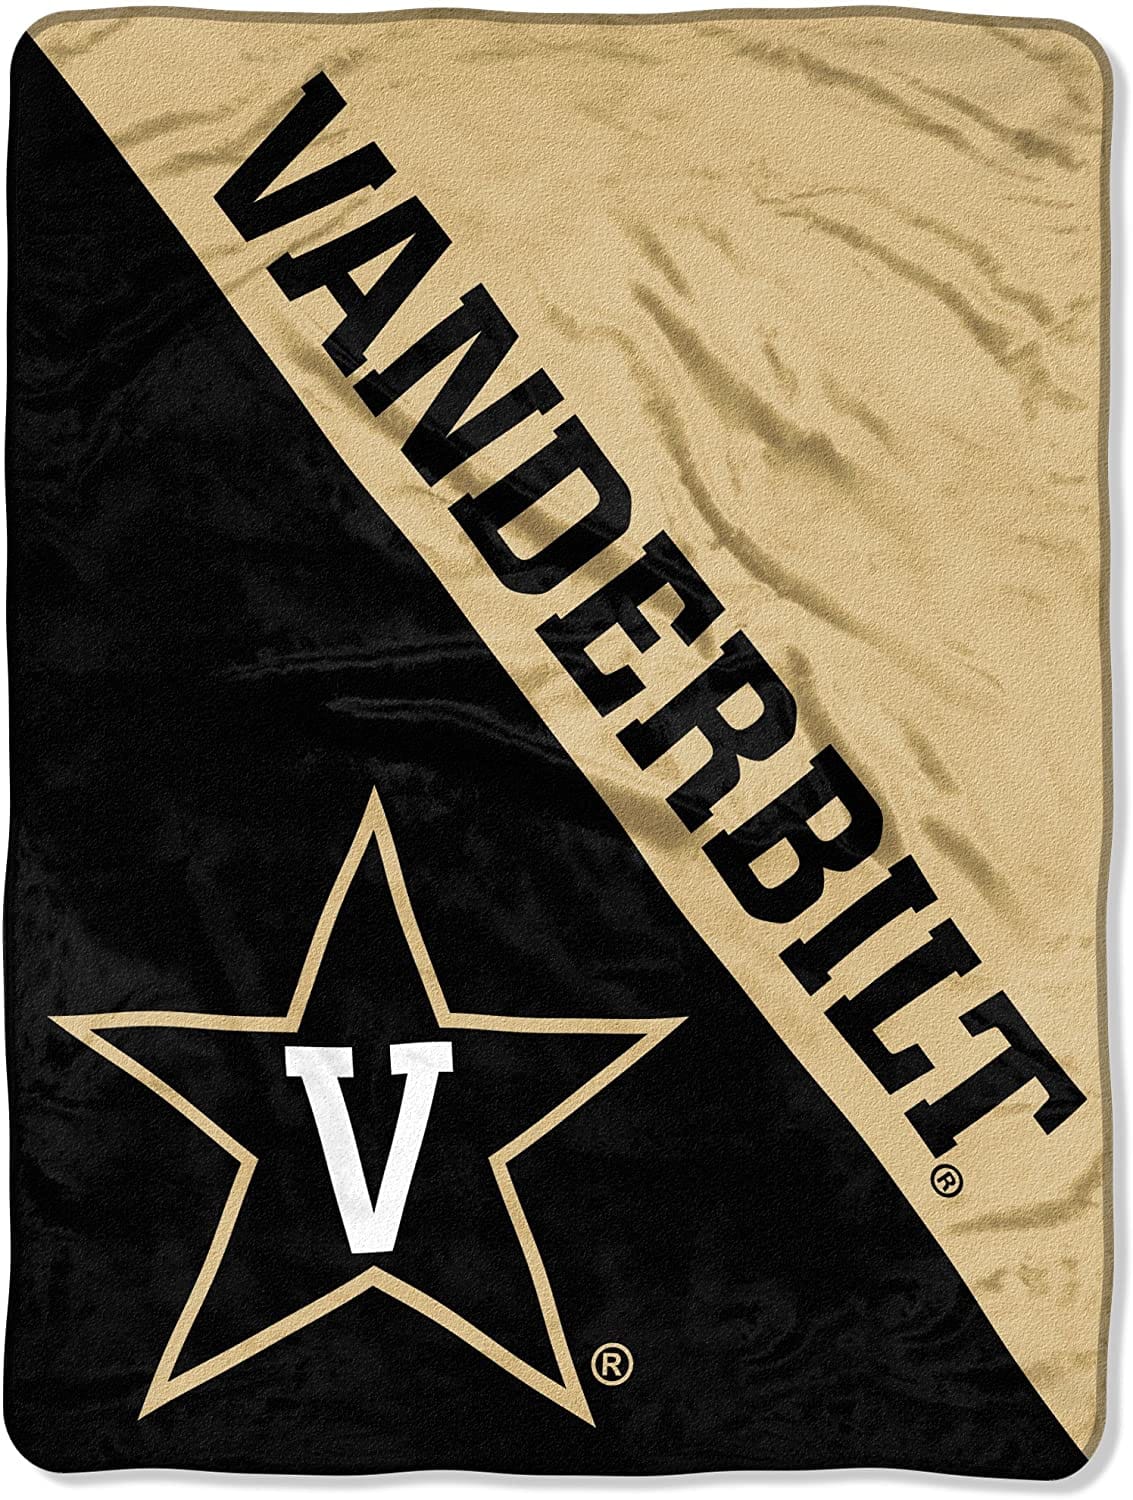 Ncaa Vanderbilt Commodores Fleece Blanket